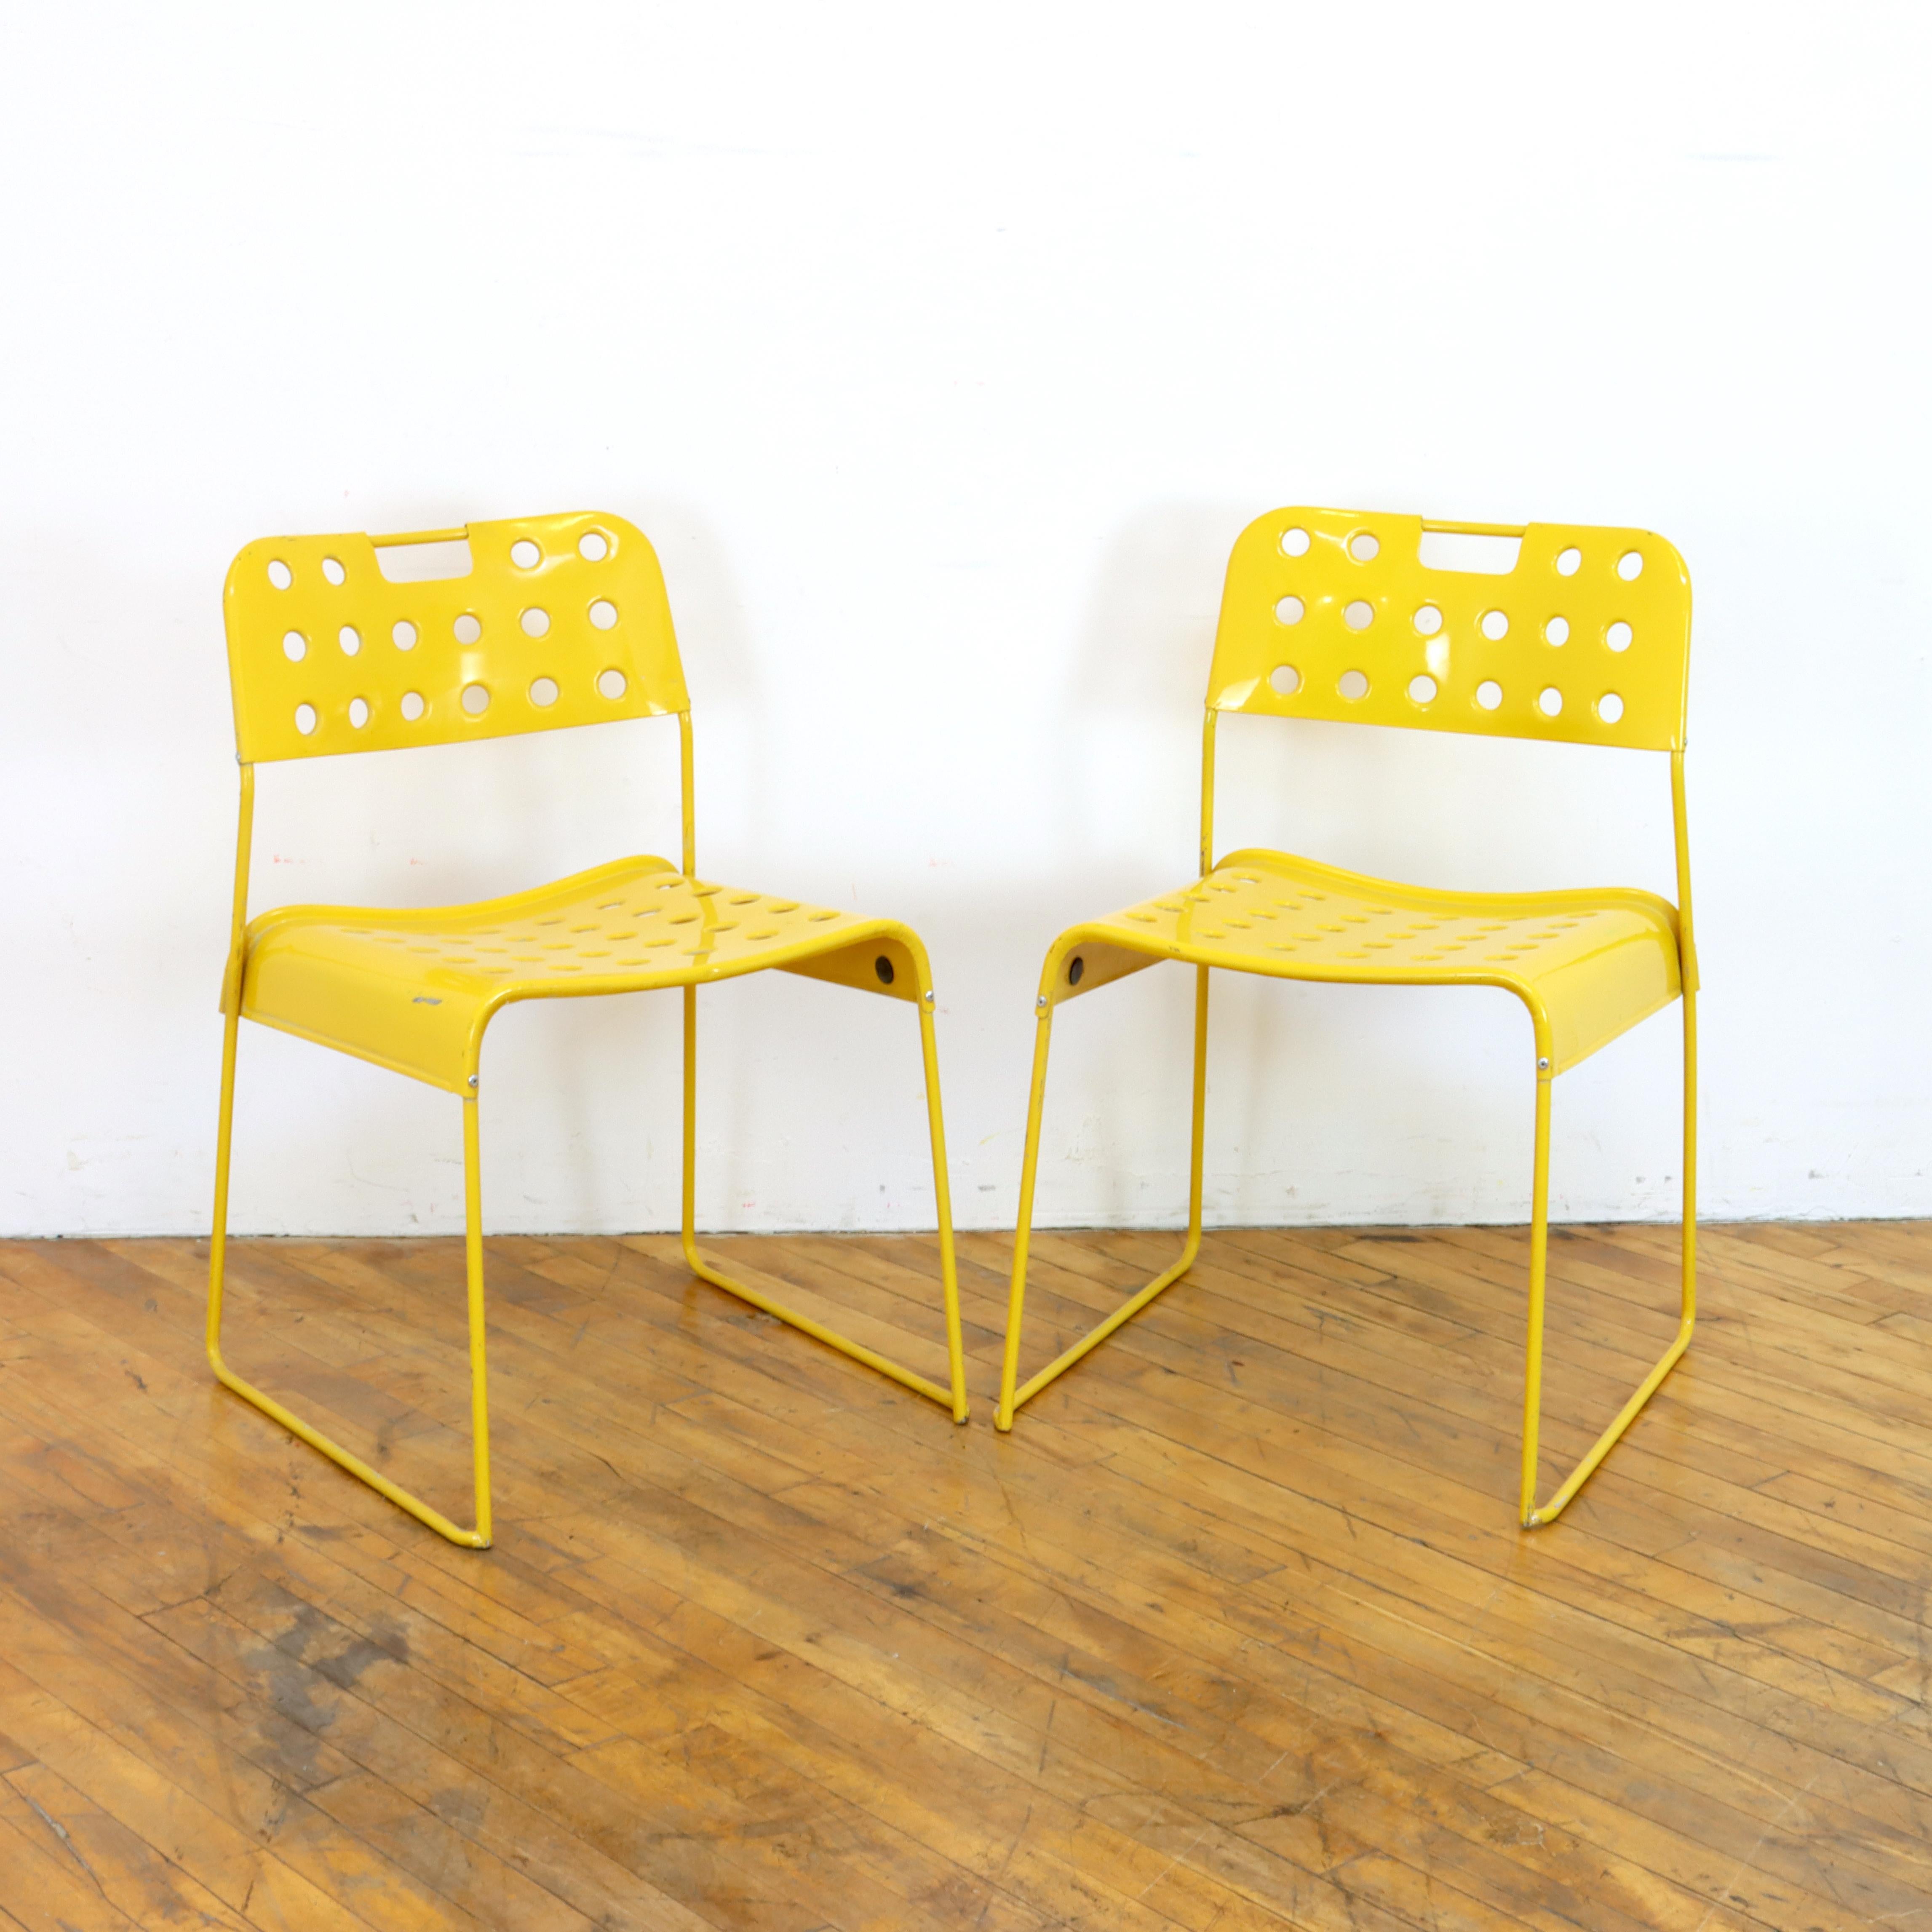 Ein Paar gelbe Omkstak-Stühle aus den 1970er Jahren von Rodney Kingsman für Bieffeplast. Drahtrahmen und perforiert 
Sitz und Rückenlehne aus Metall. Can drinnen oder draußen verwendet werden.  

18,5